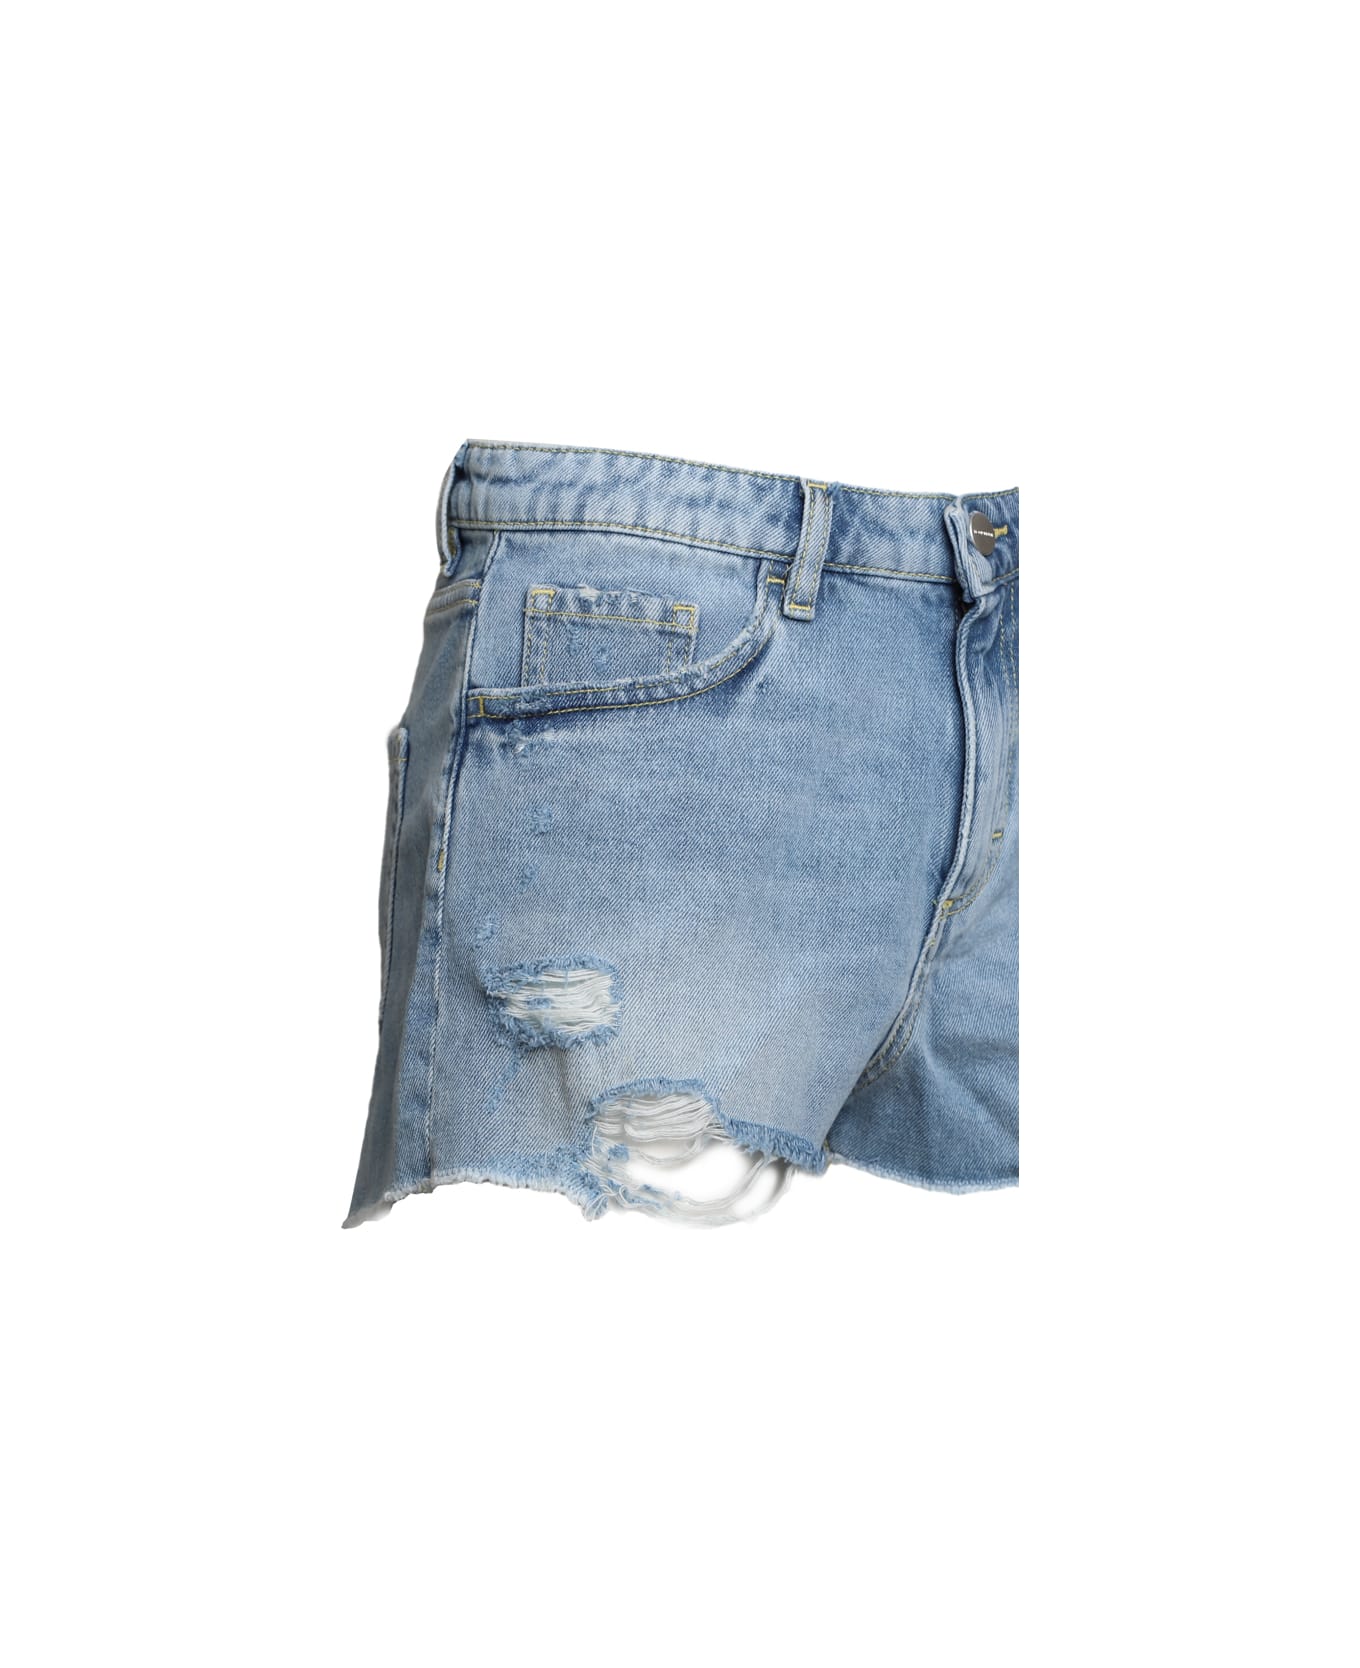 Icon Denim Sam Shorts In Cotton Denim - Blue